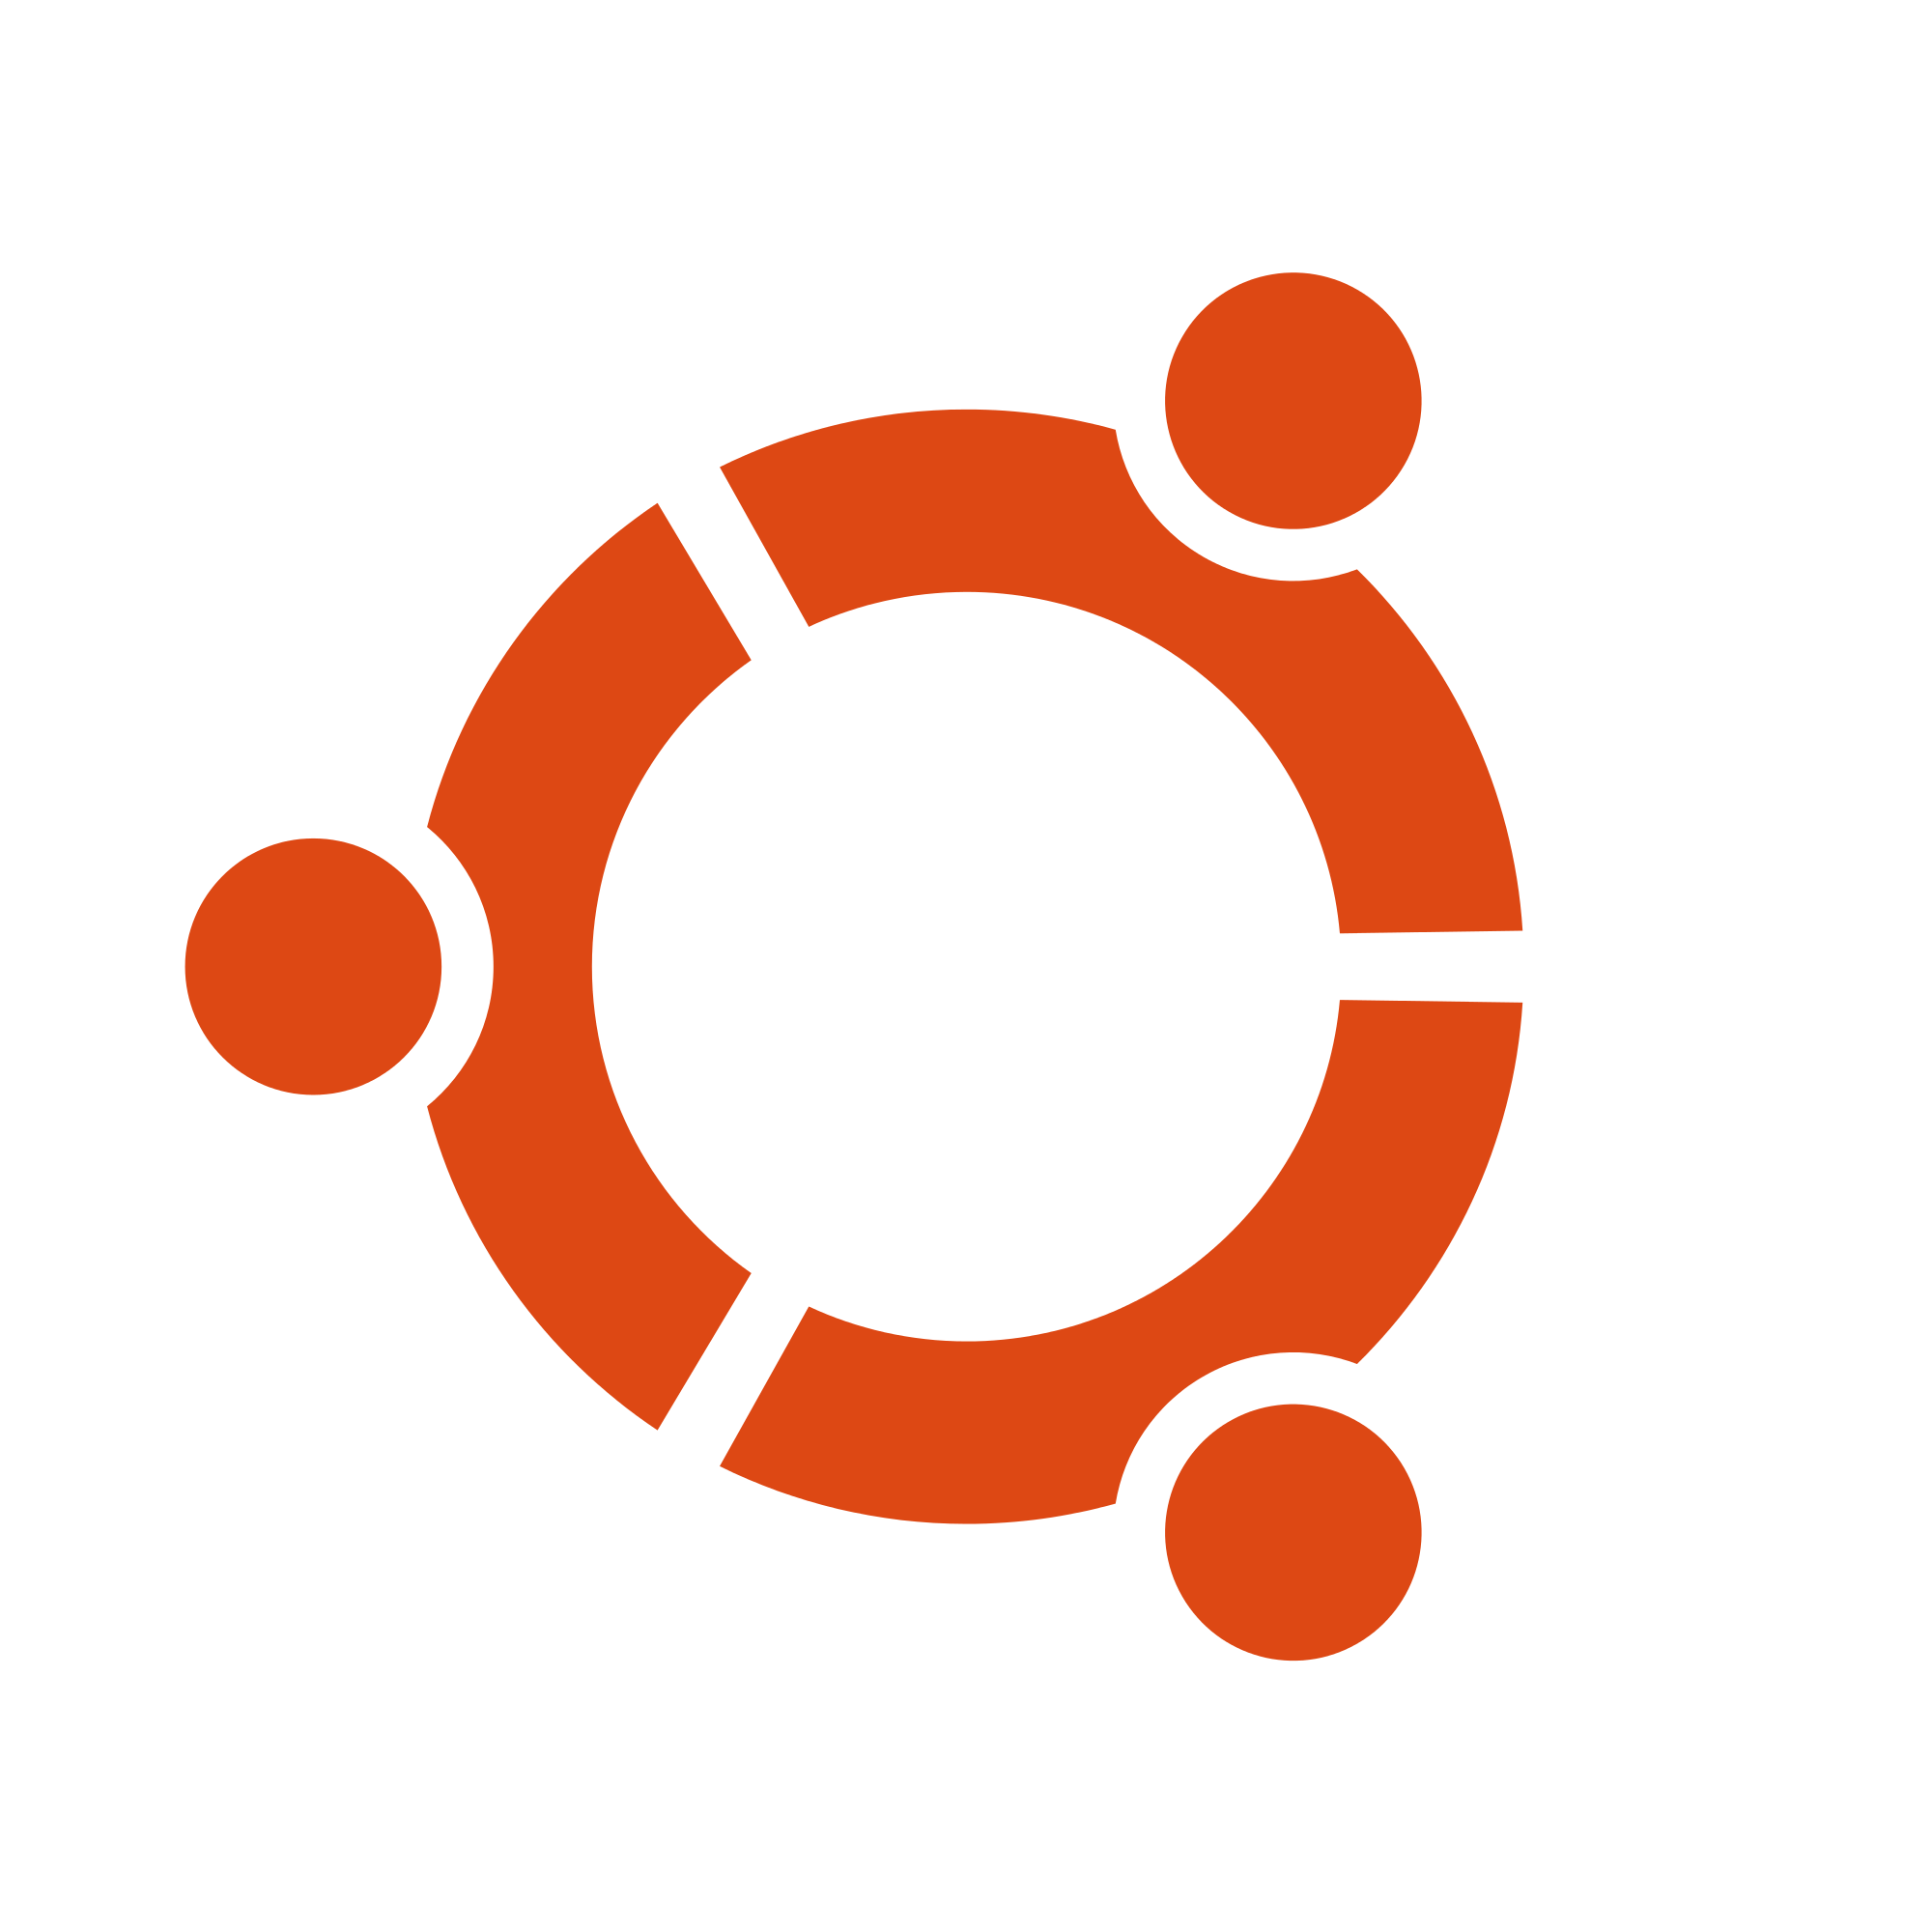 Orange Hex Logo - File:Logo-ubuntu cof-white orange-hex.svg - Wikimedia Commons